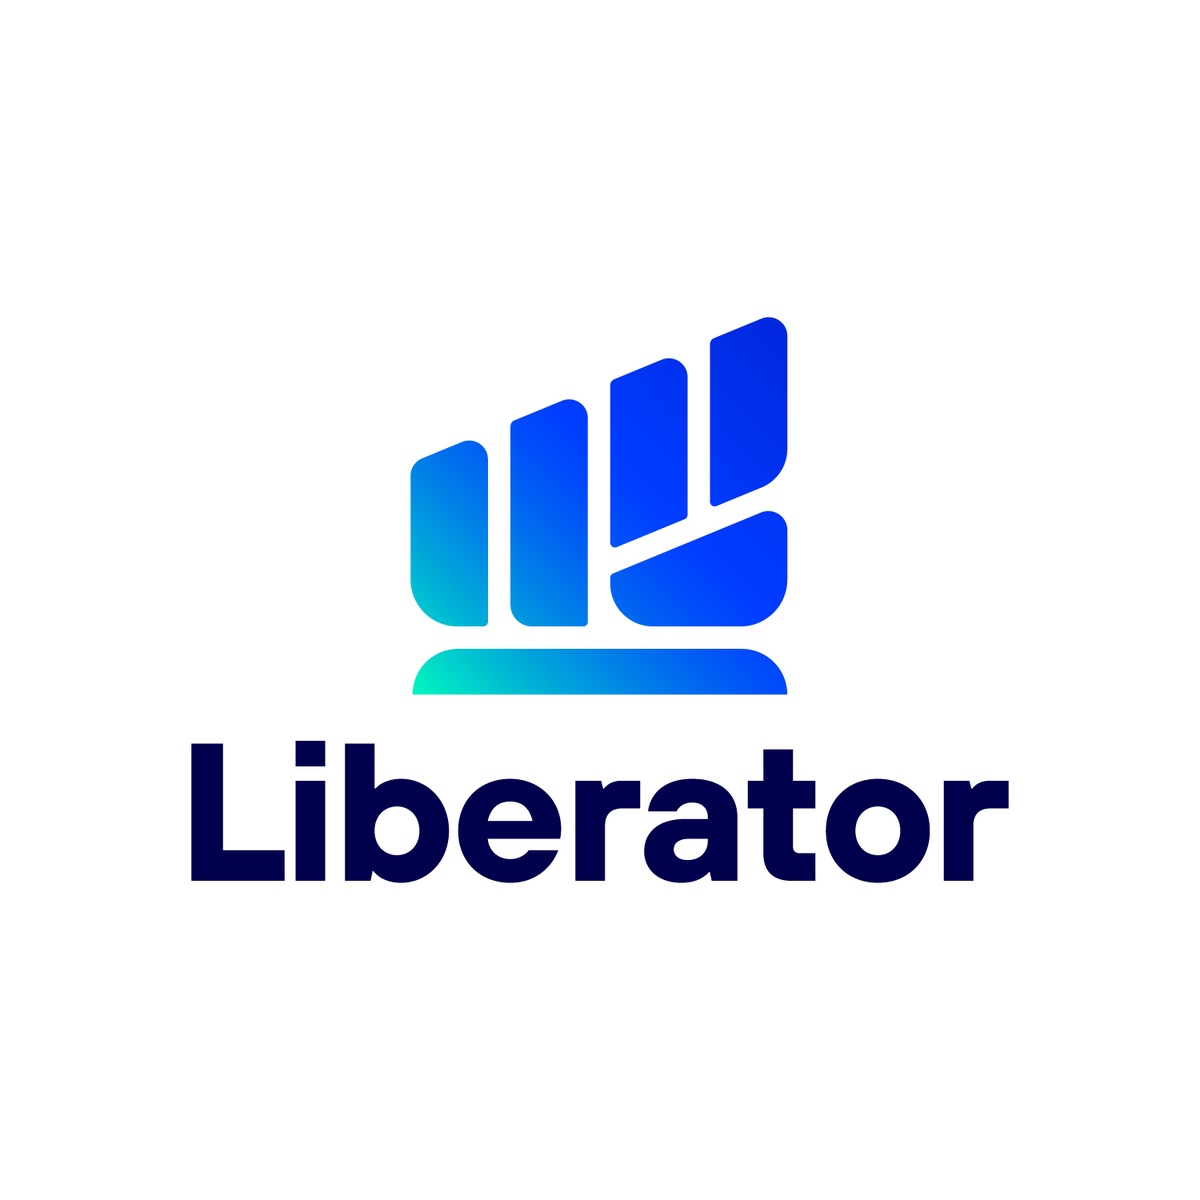 บล.ลิเบอเรเตอร์ เปิดตัวทีมวิเคราะห์หลักทรัพย์ นำทัพโดย จรูญพันธ์ วัฒนพันธ์ พร้อมปูทางสู่ Liberator Academy เริ่มโปรเจกต์แรกกับ LIB Talks 15 พ.ค.นี้!